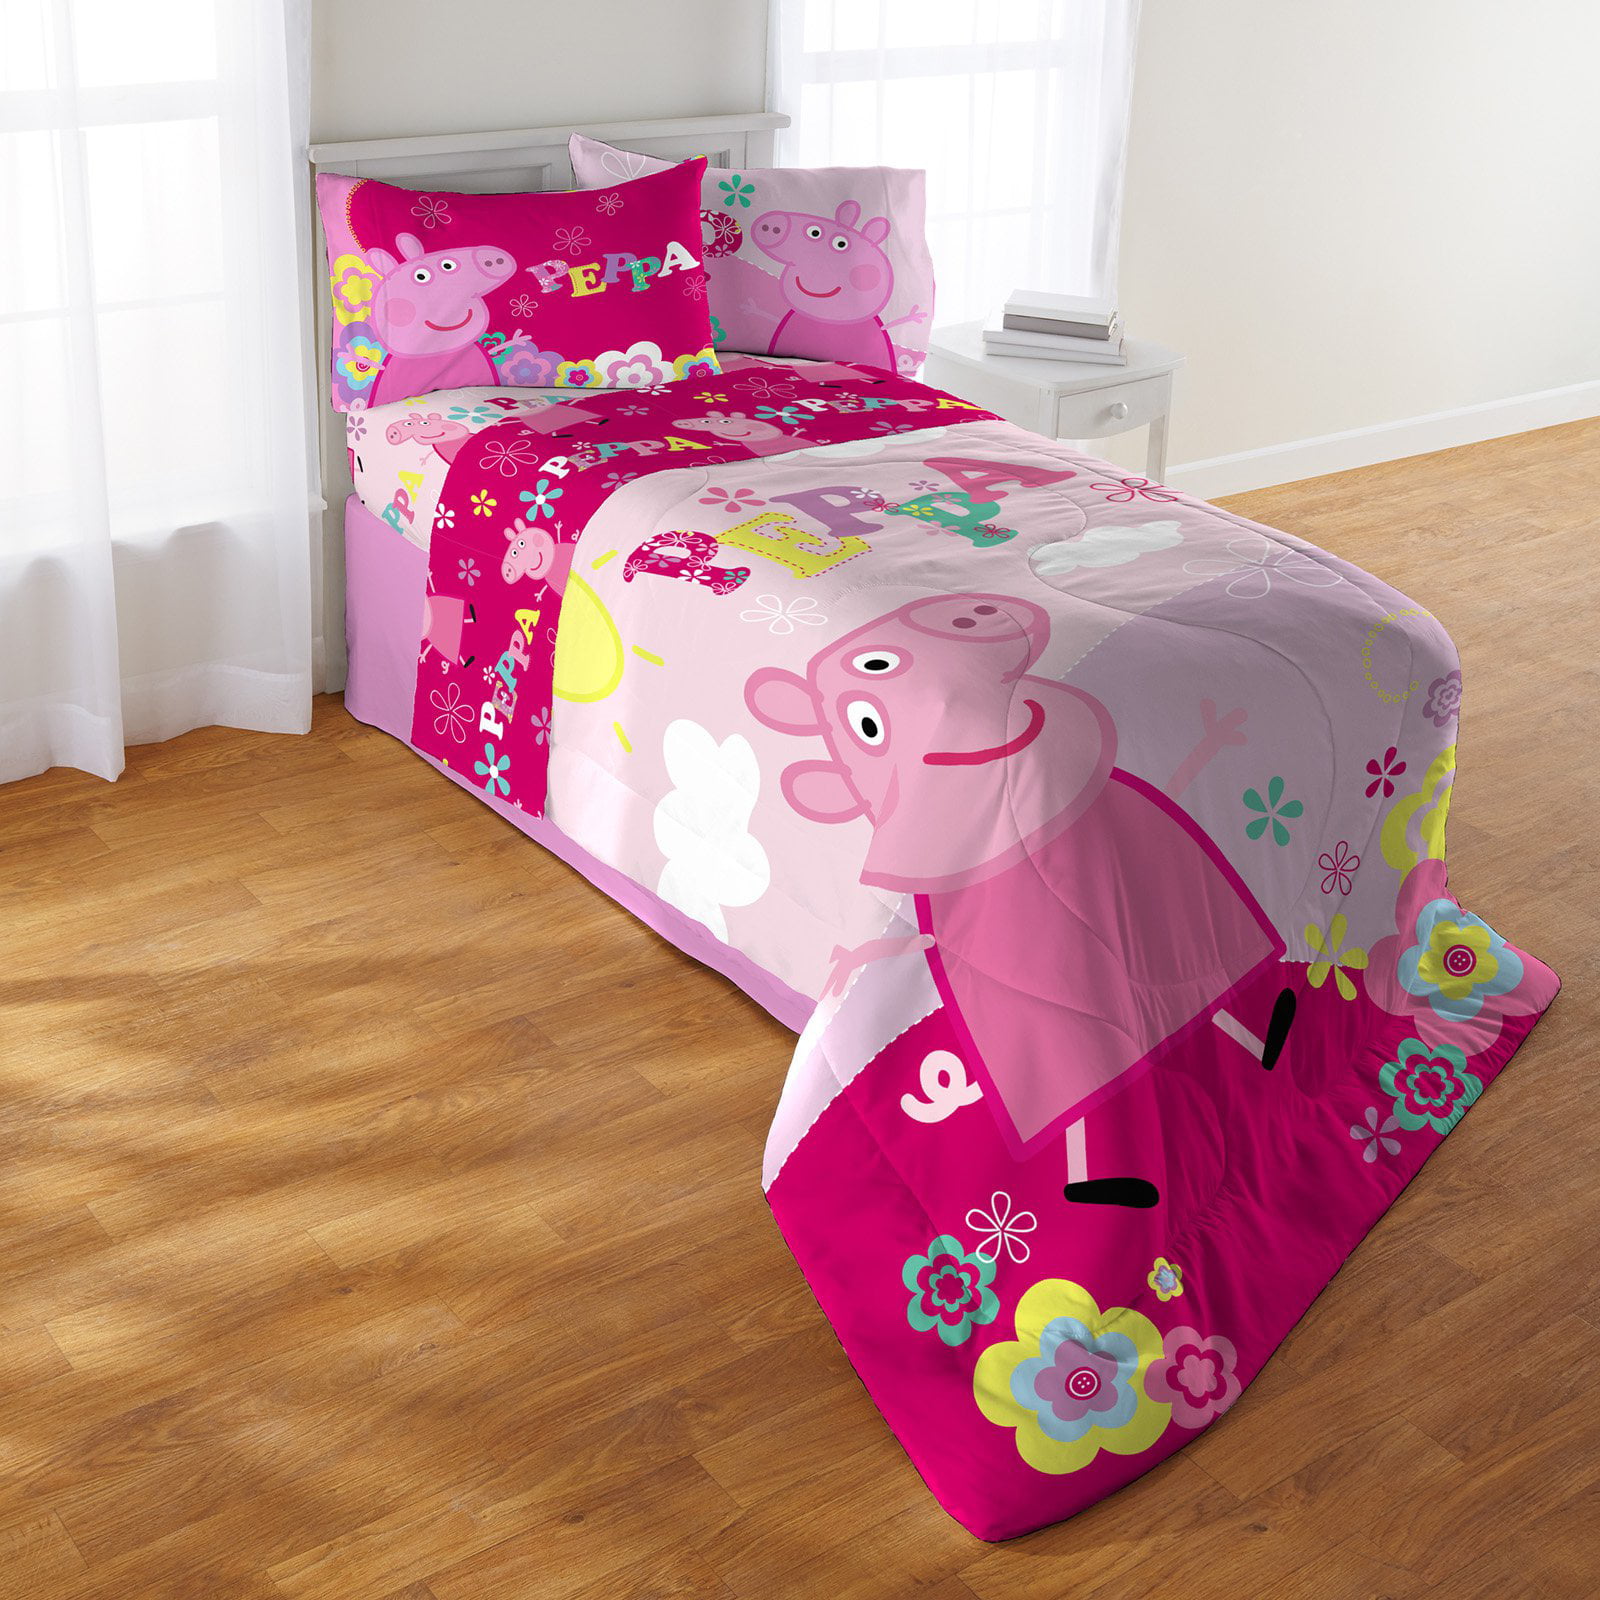 Peppa Pig Tweet Oink 4 Piece, Peppa Pig Bed In A Bag Twin